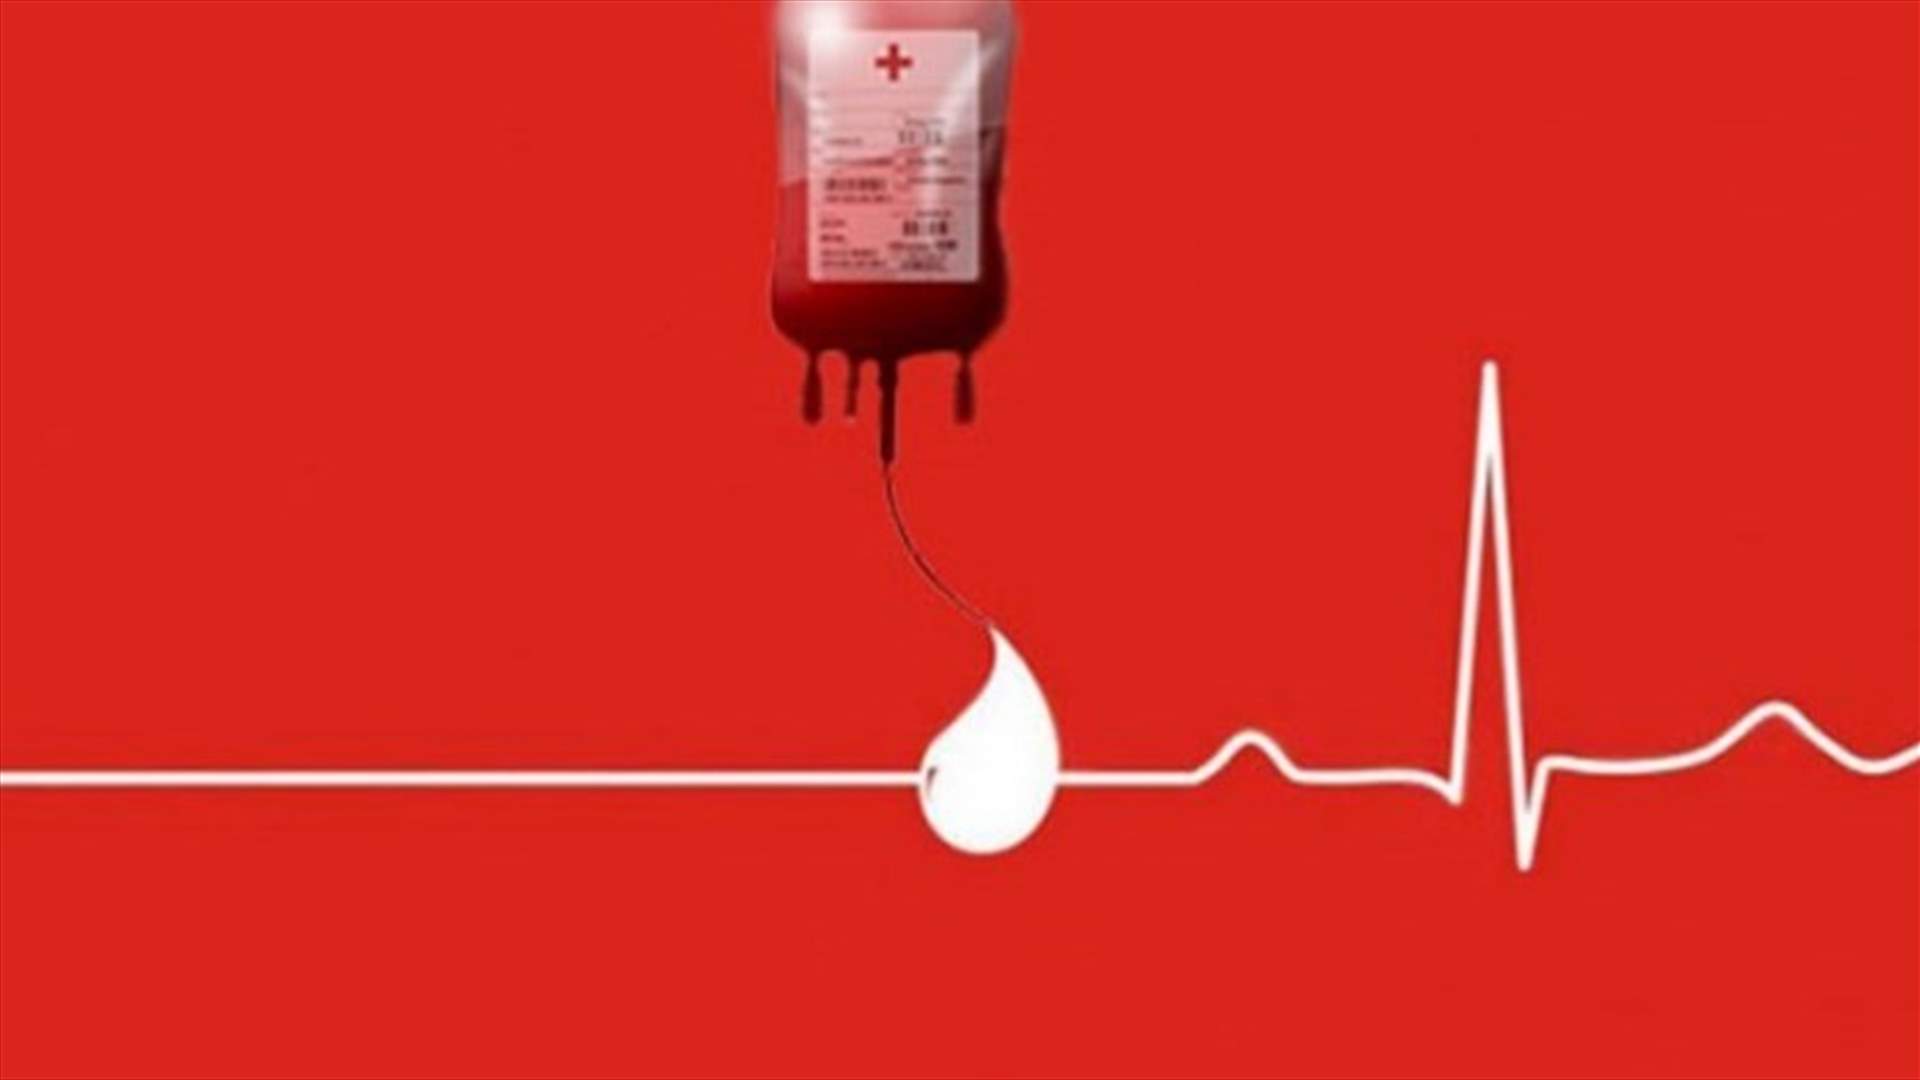 مريض في مستشفى رزق - الاشرفية بحاجة ماسة إلى دم من فئة A- أو O-  للتبرع: 03/066960